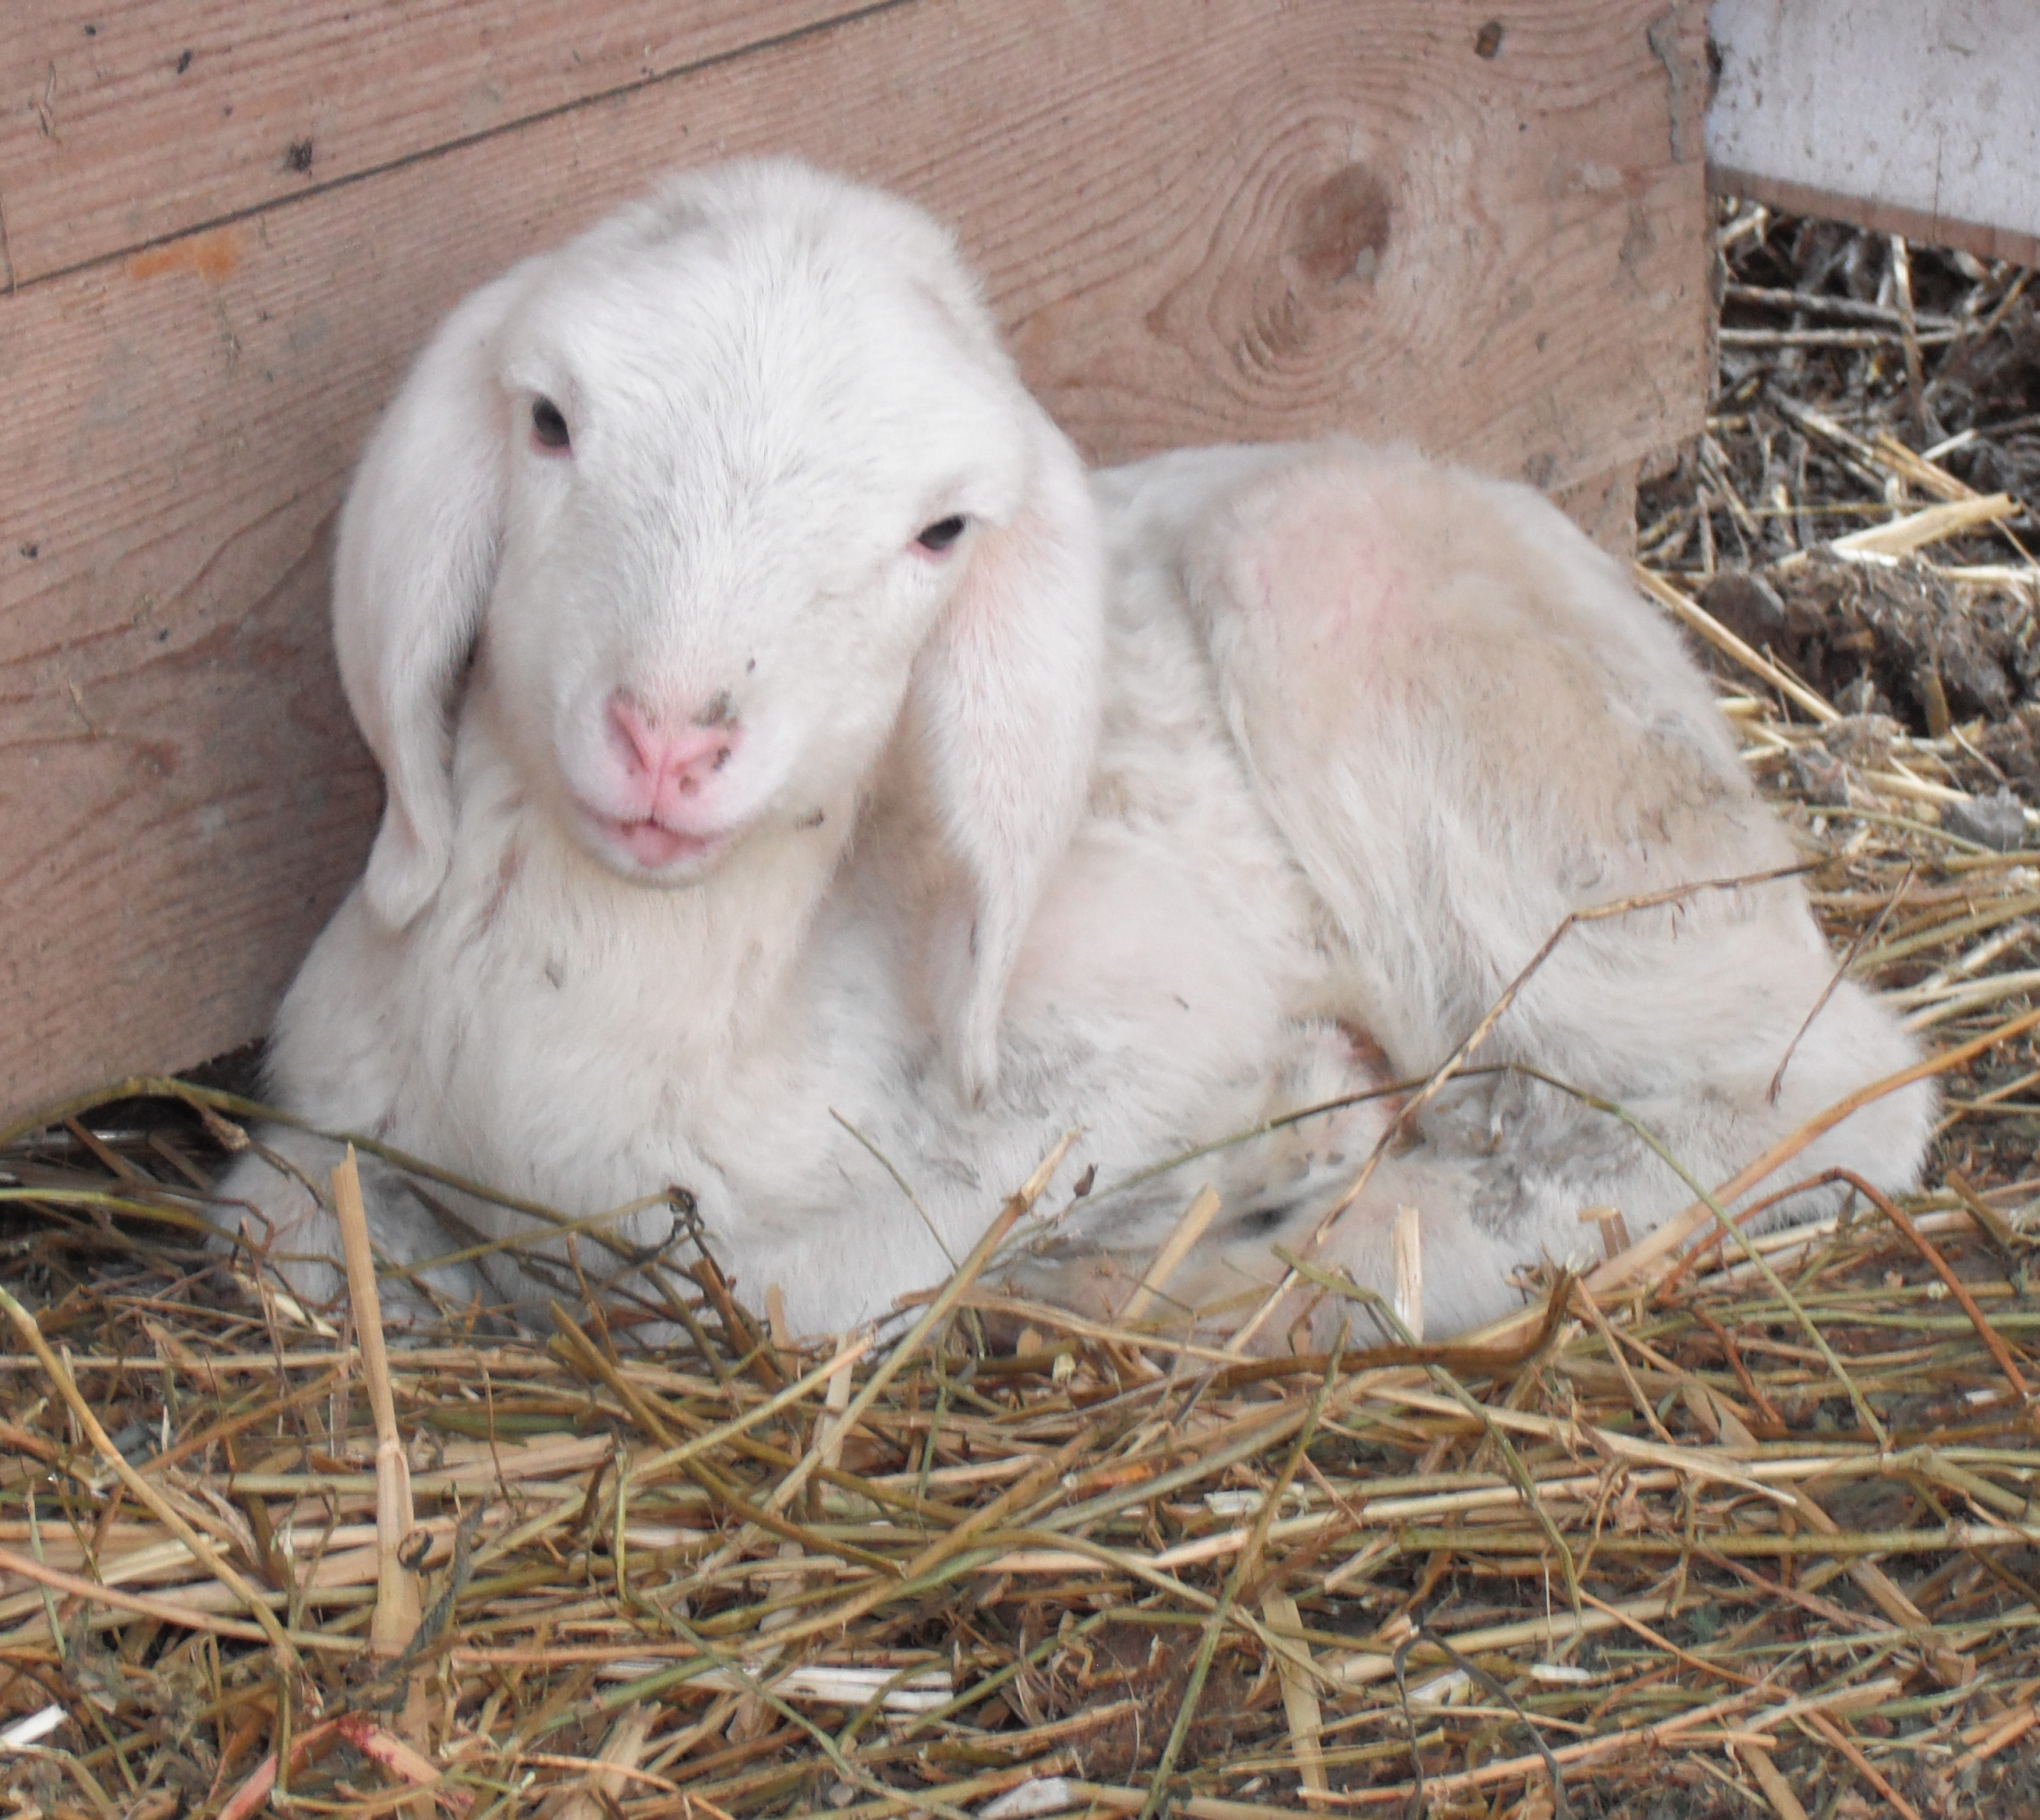 Pasqua 2015, una petizione contro la mattanza degli agnelli. Oltre 17.770 firme contro la “Pasqua di Sangue”